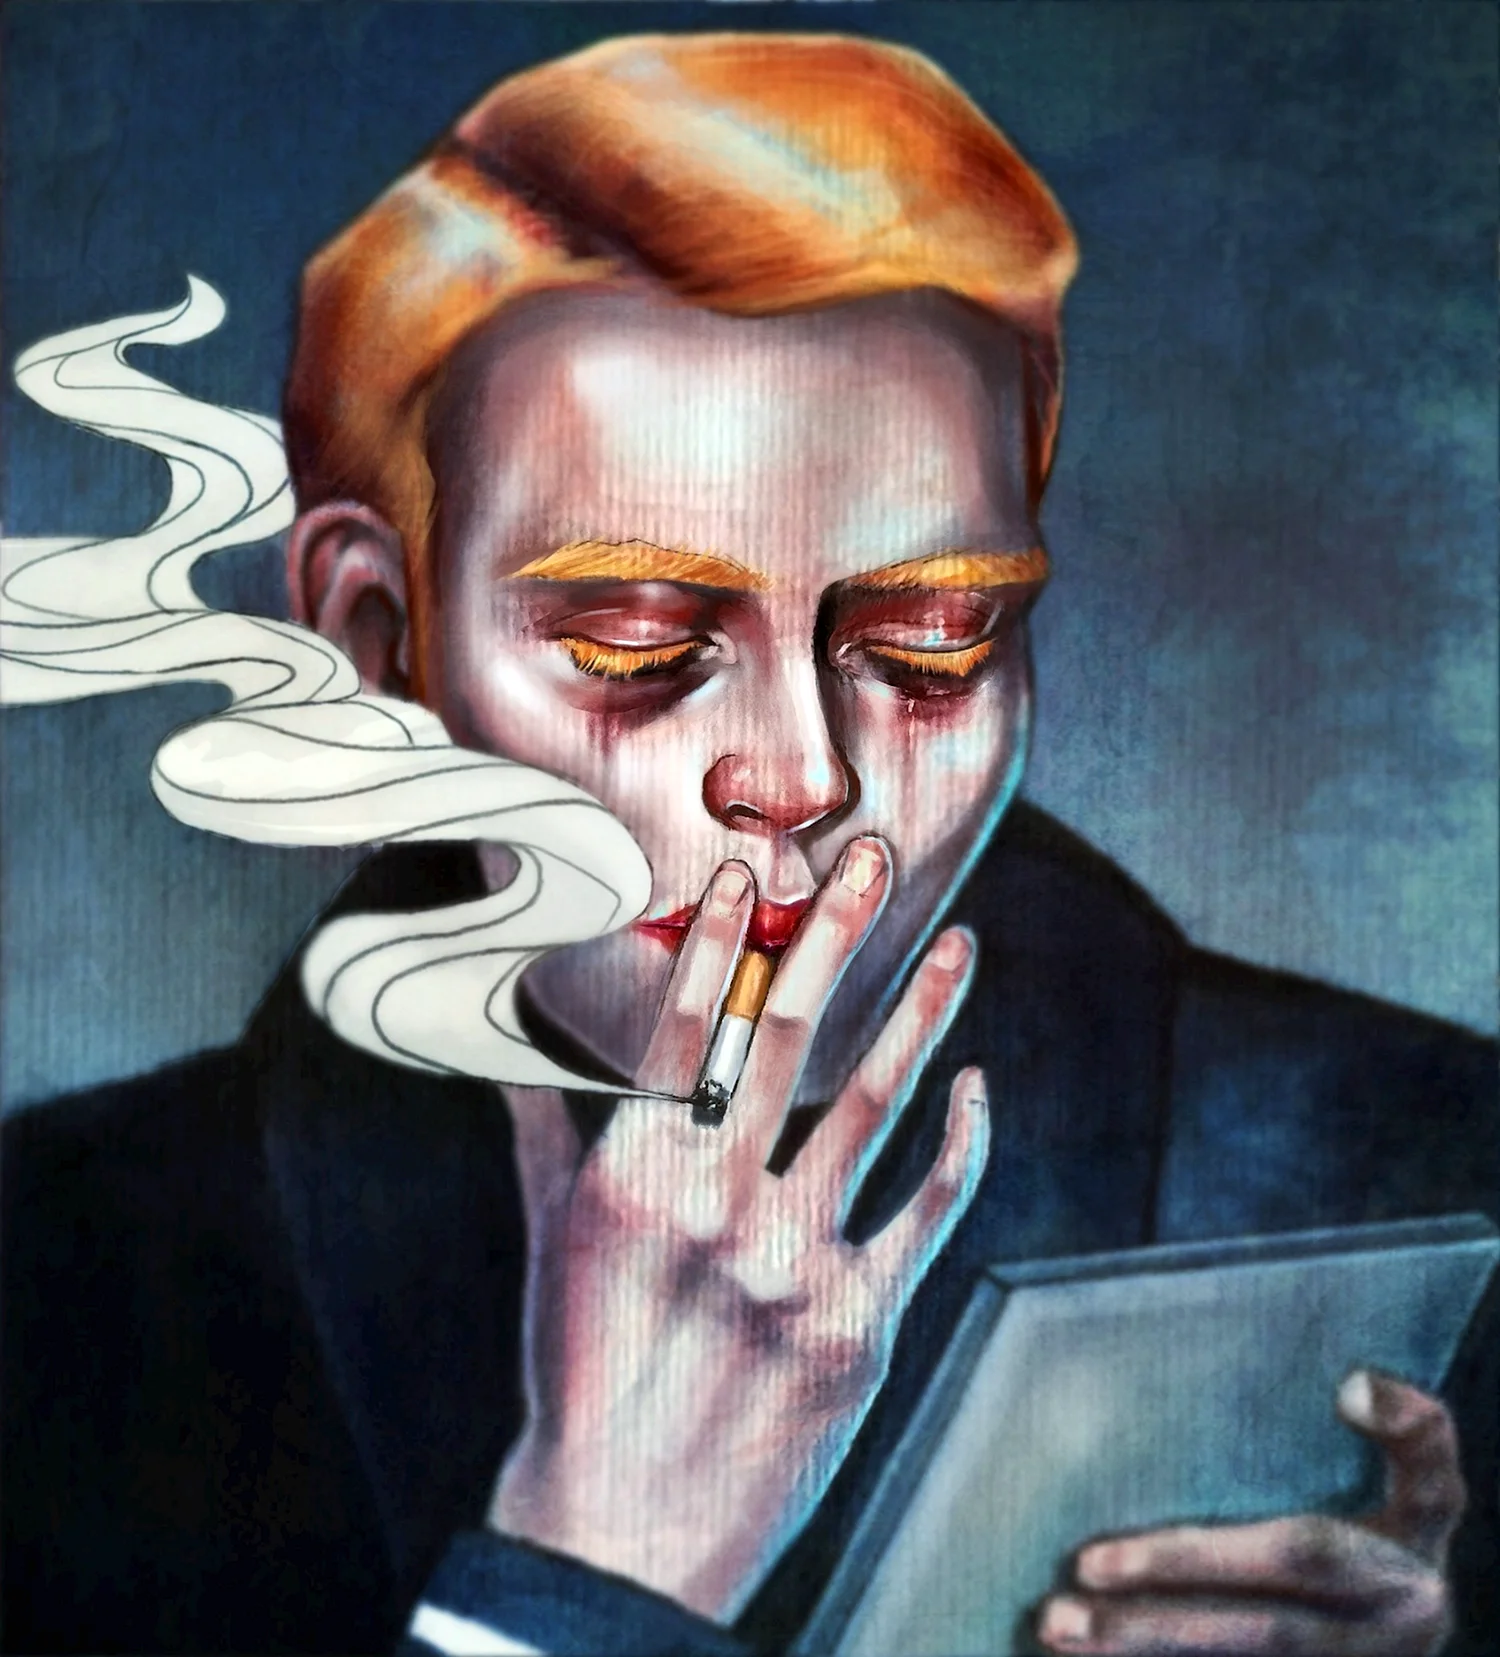 Курящий человек арт